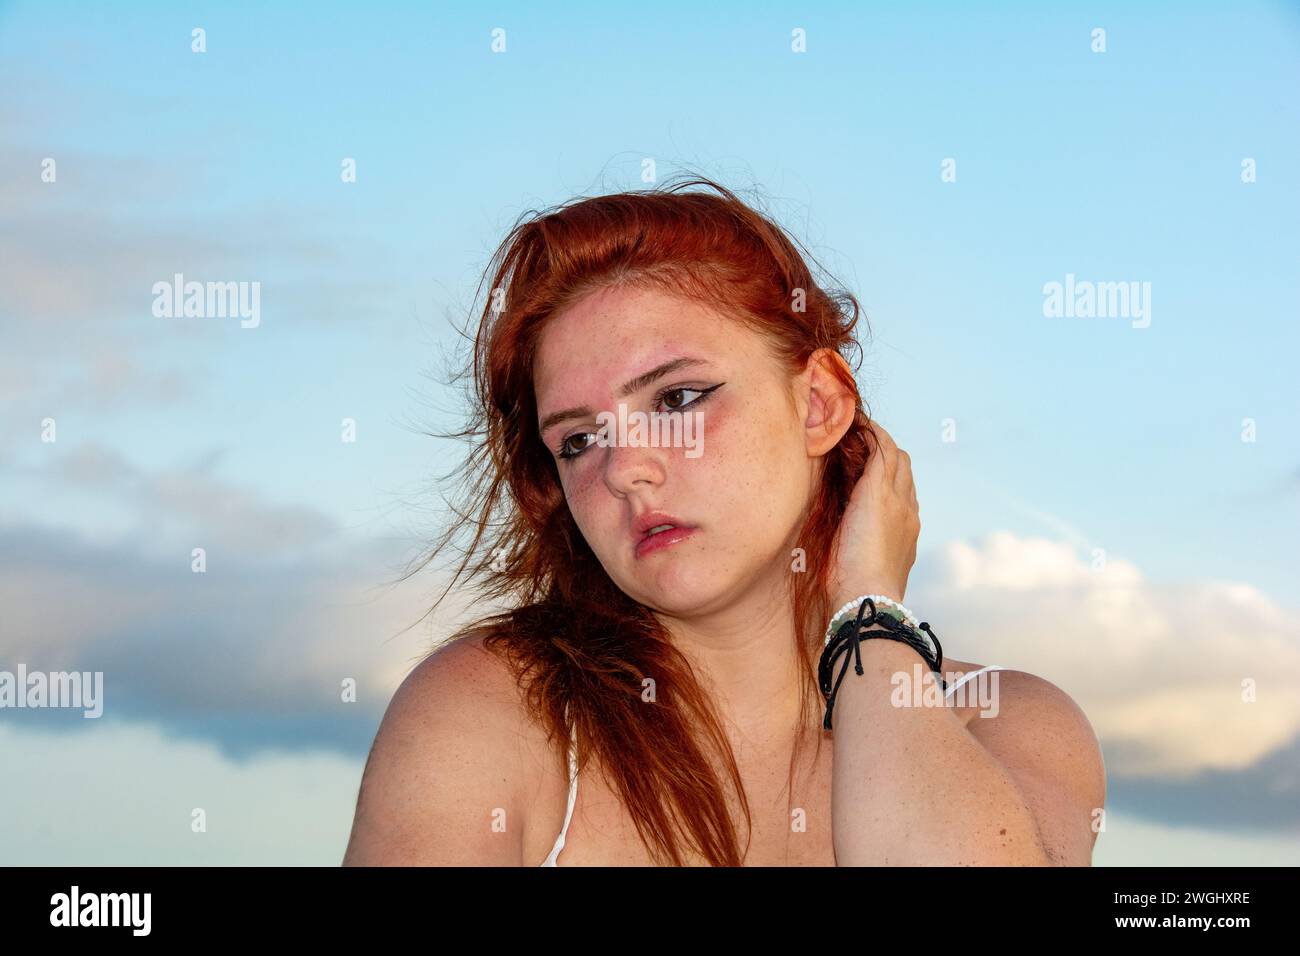 Ritratto di una giovane ragazza con i capelli rossi, il cielo blu e le nuvole, i capelli tormentati dal vento Foto Stock